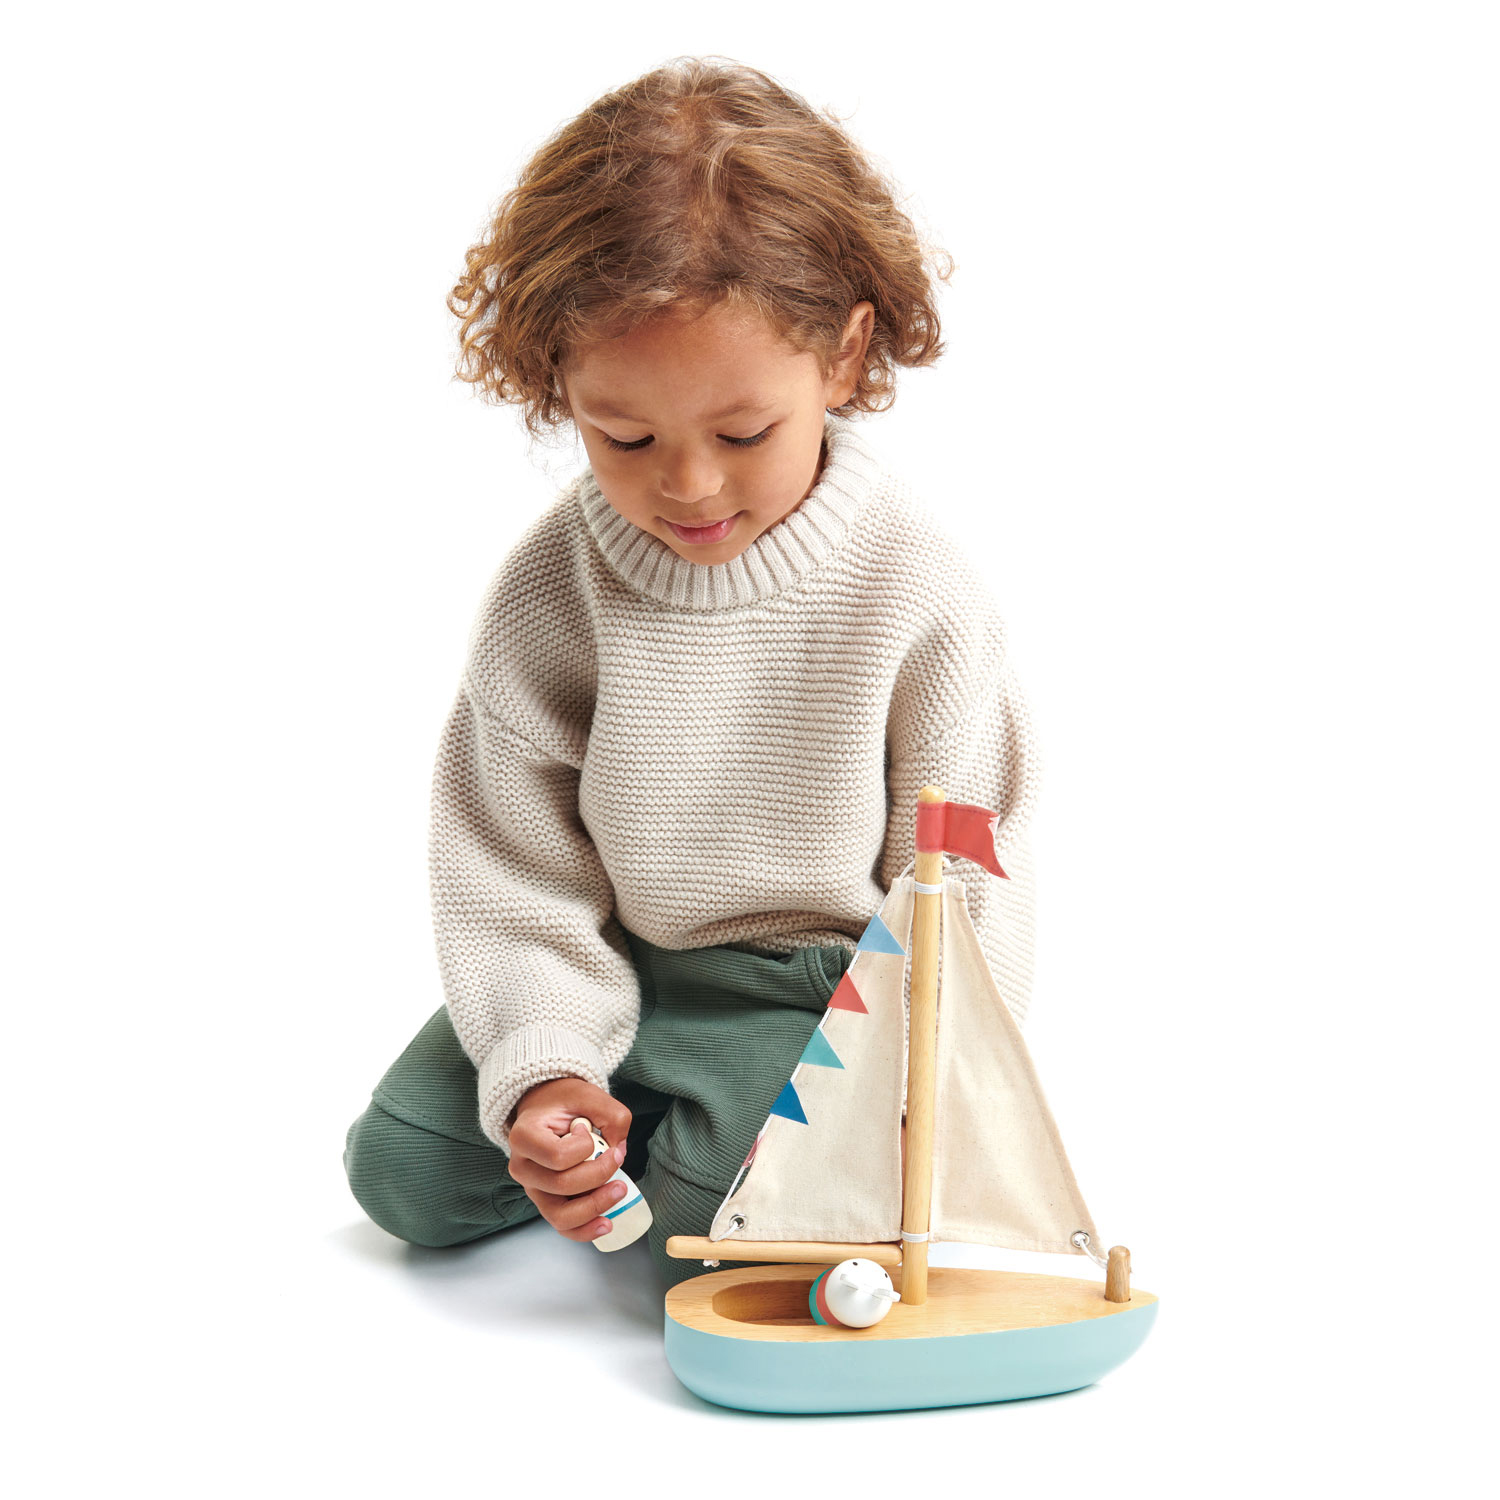 Småfolk - Segelbåt, Tender leaf toys